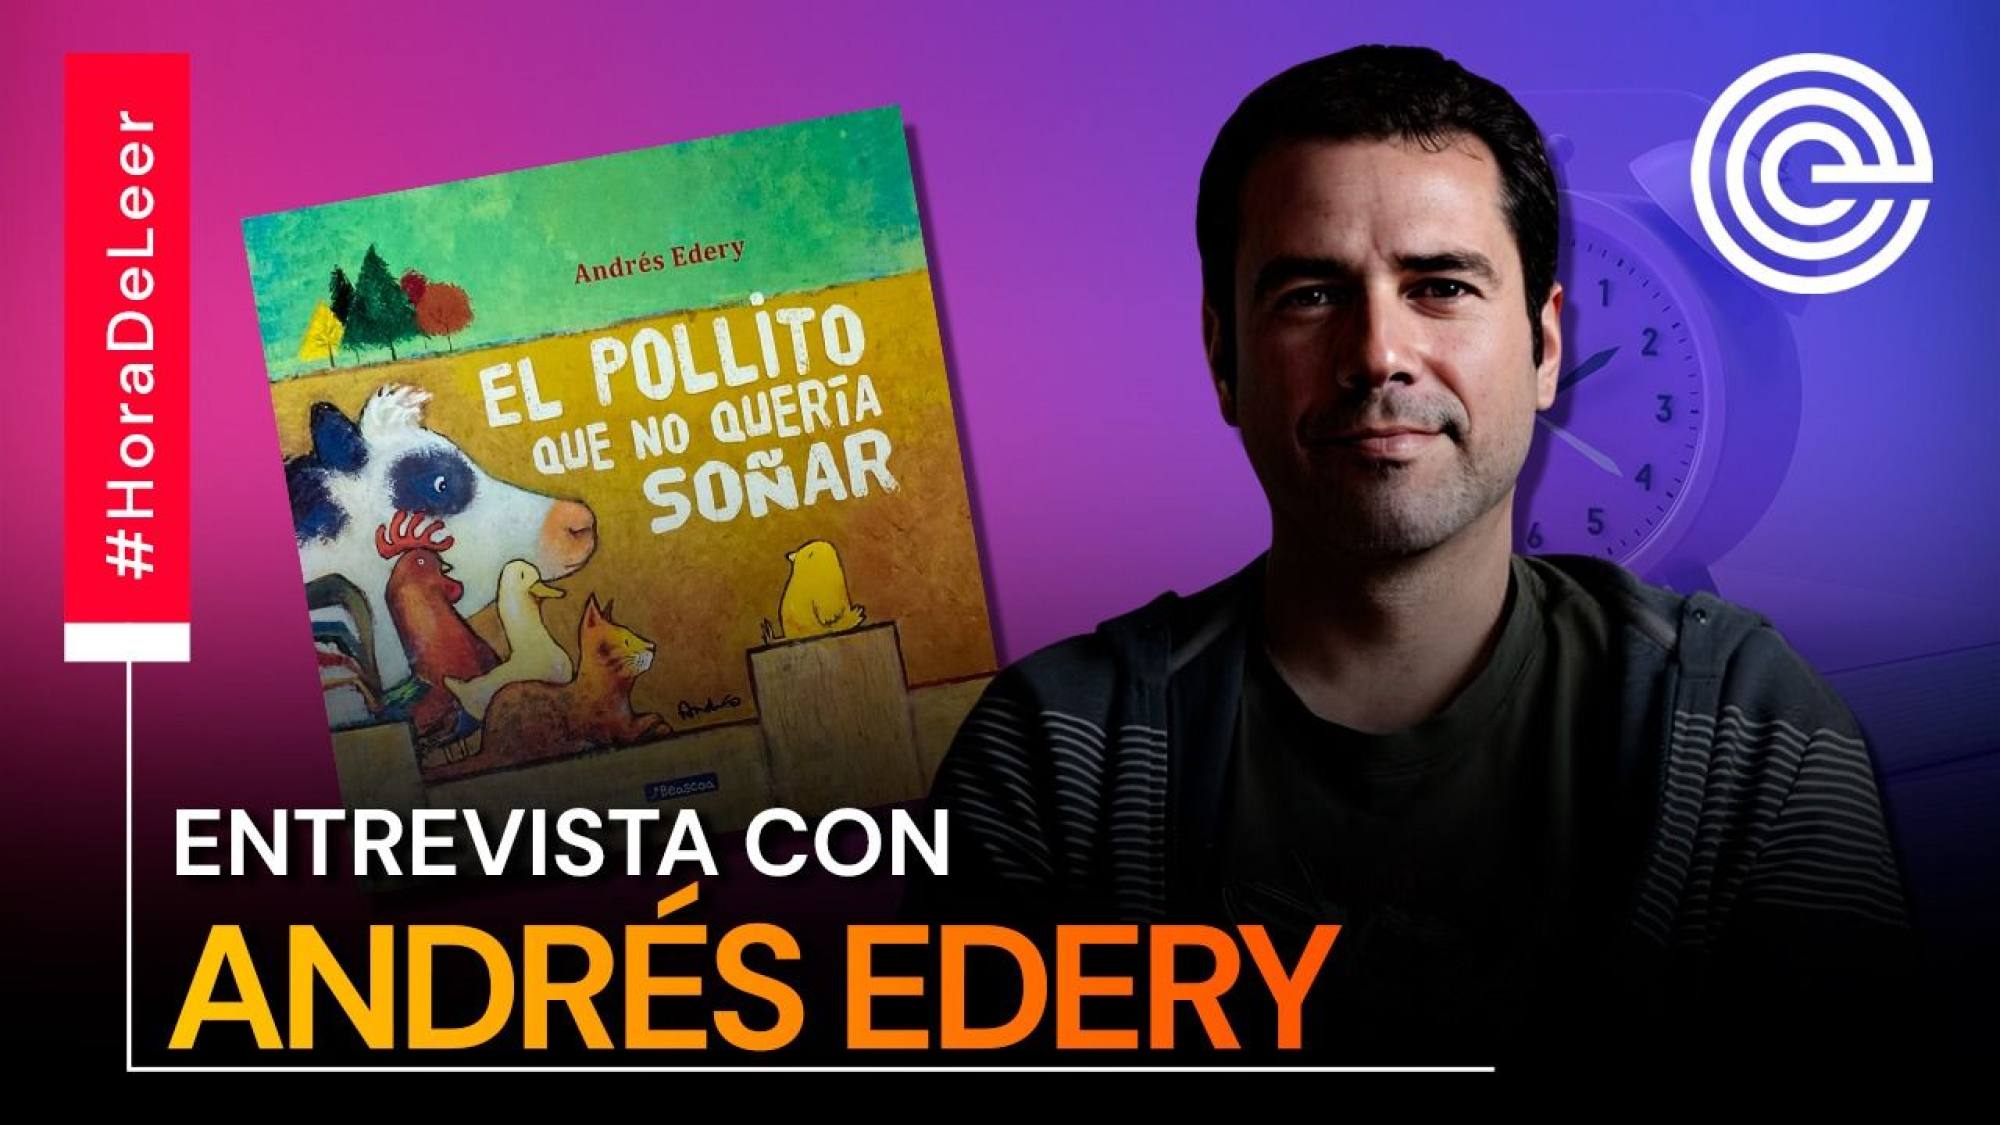 Andrés Edery presenta 'El pollito que no quería soñar', Epicentro TV